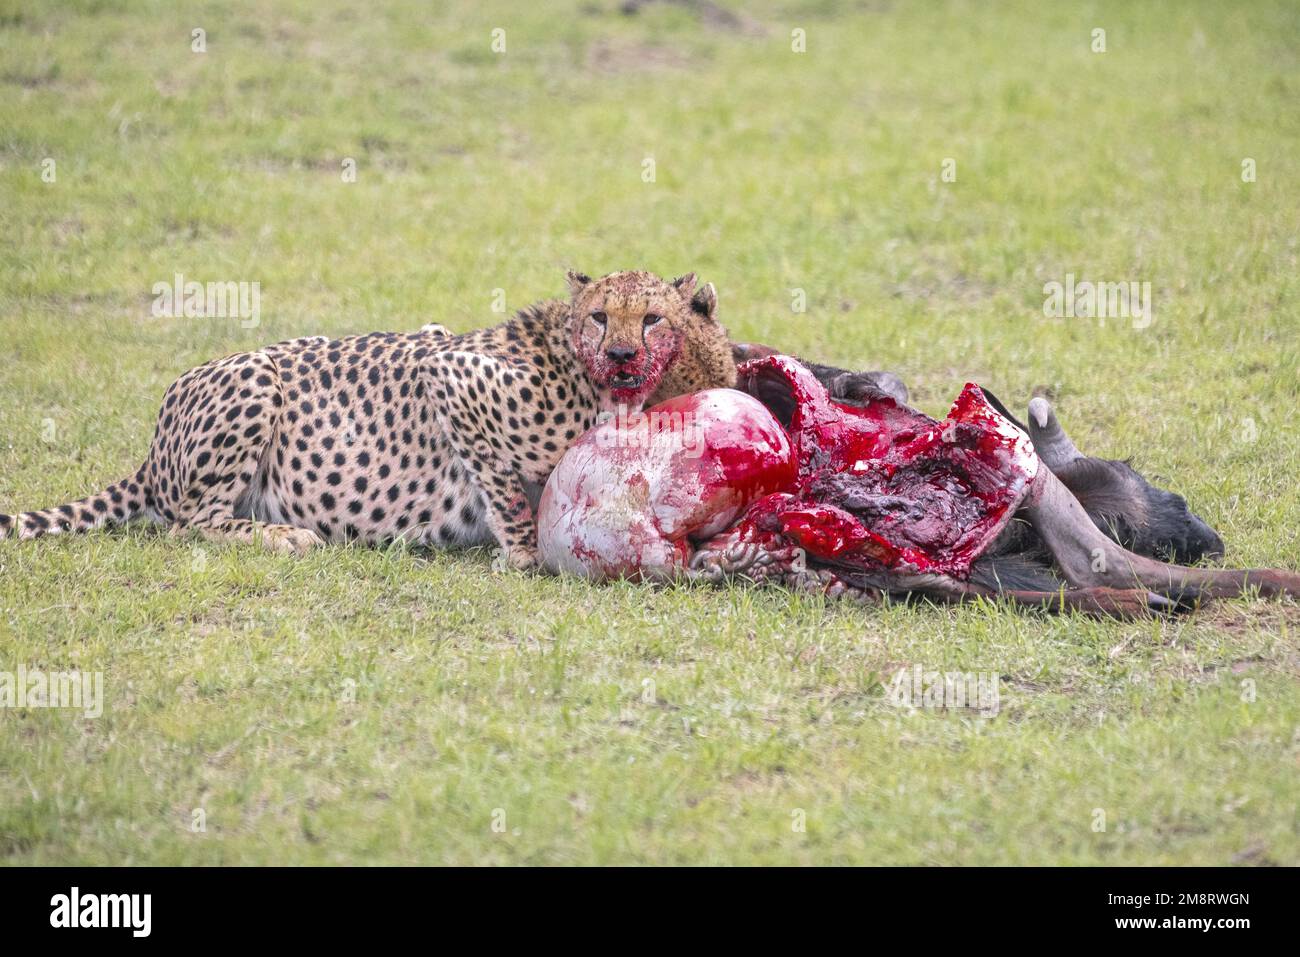 Les cheetahs mangent leur mort pendant que les visiteurs de safari regardent Banque D'Images